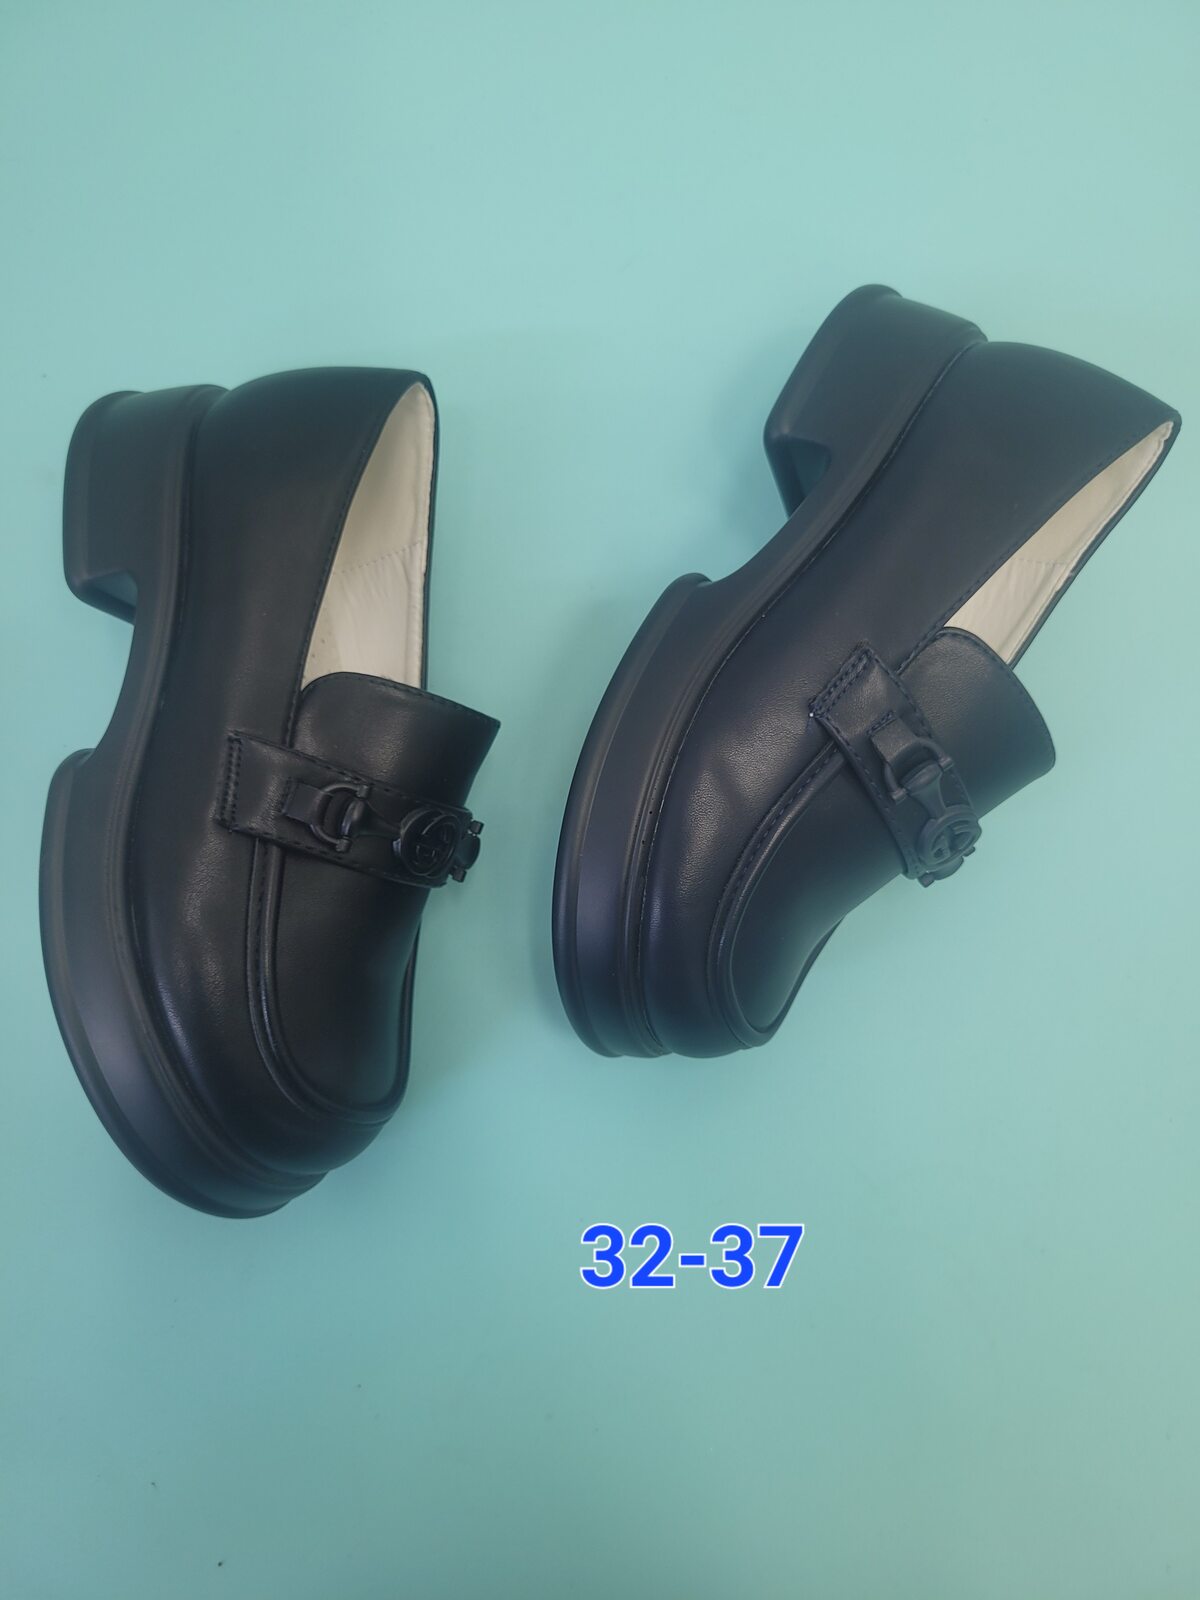 Школьная форма, туфли арт.482218